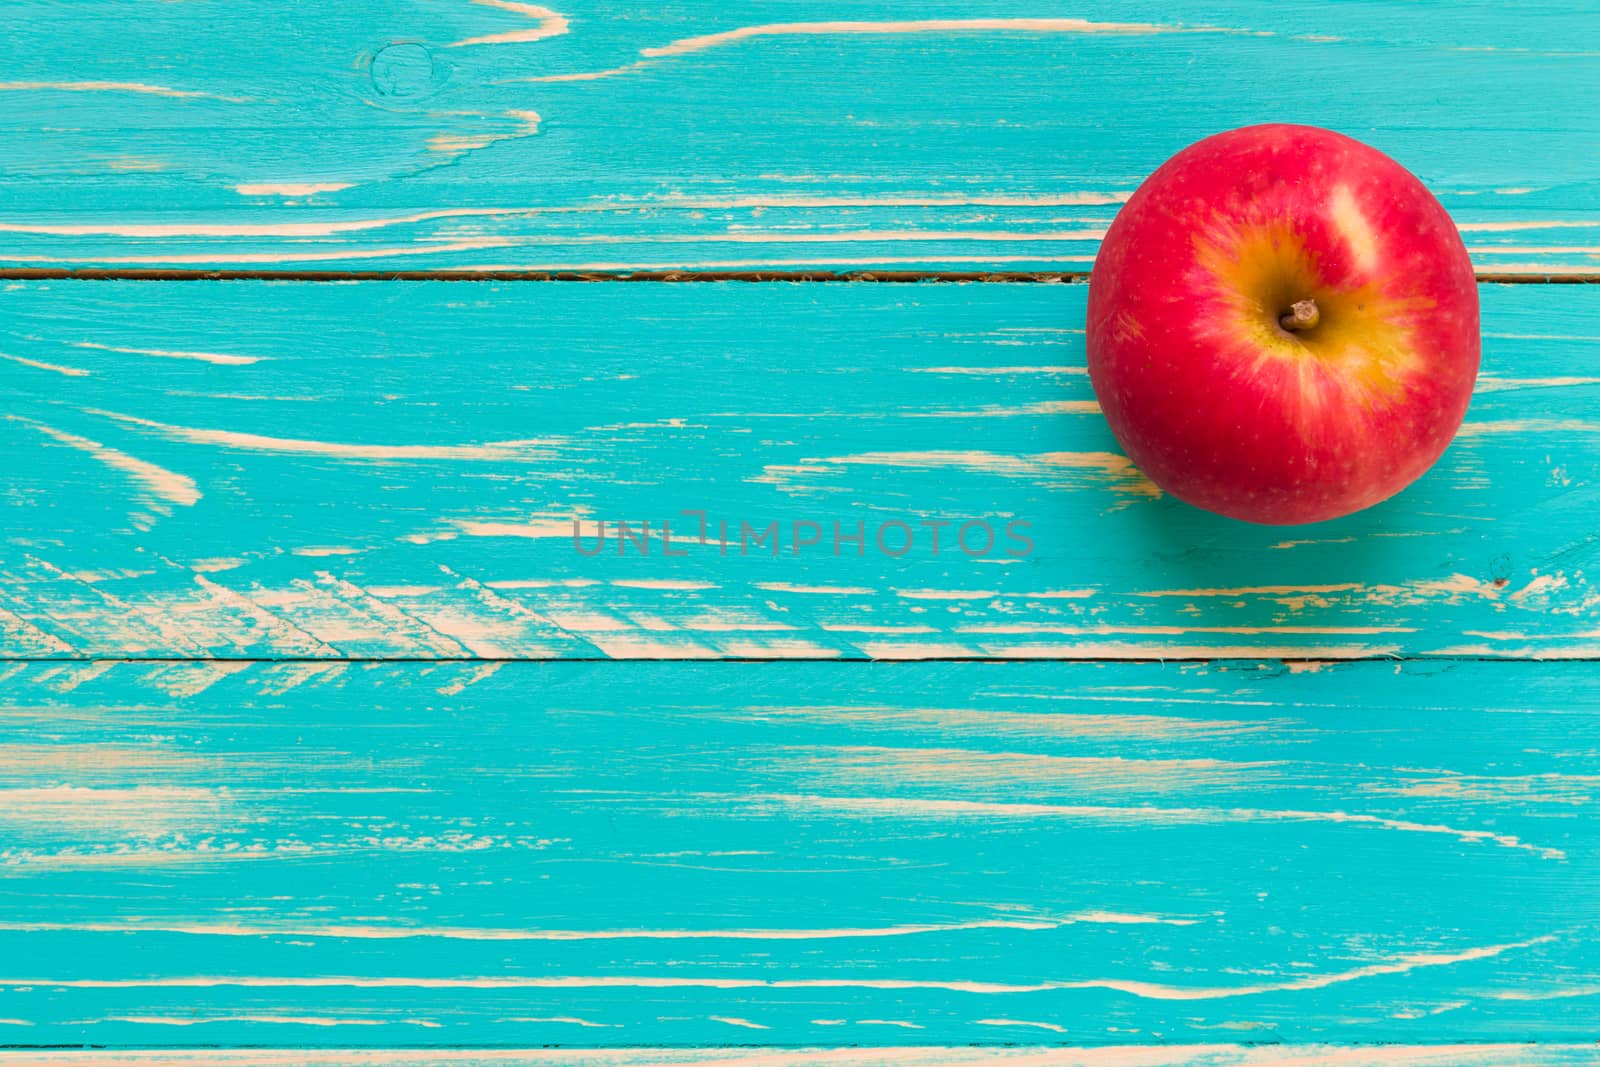 Red apple on vintage blue wooden background.